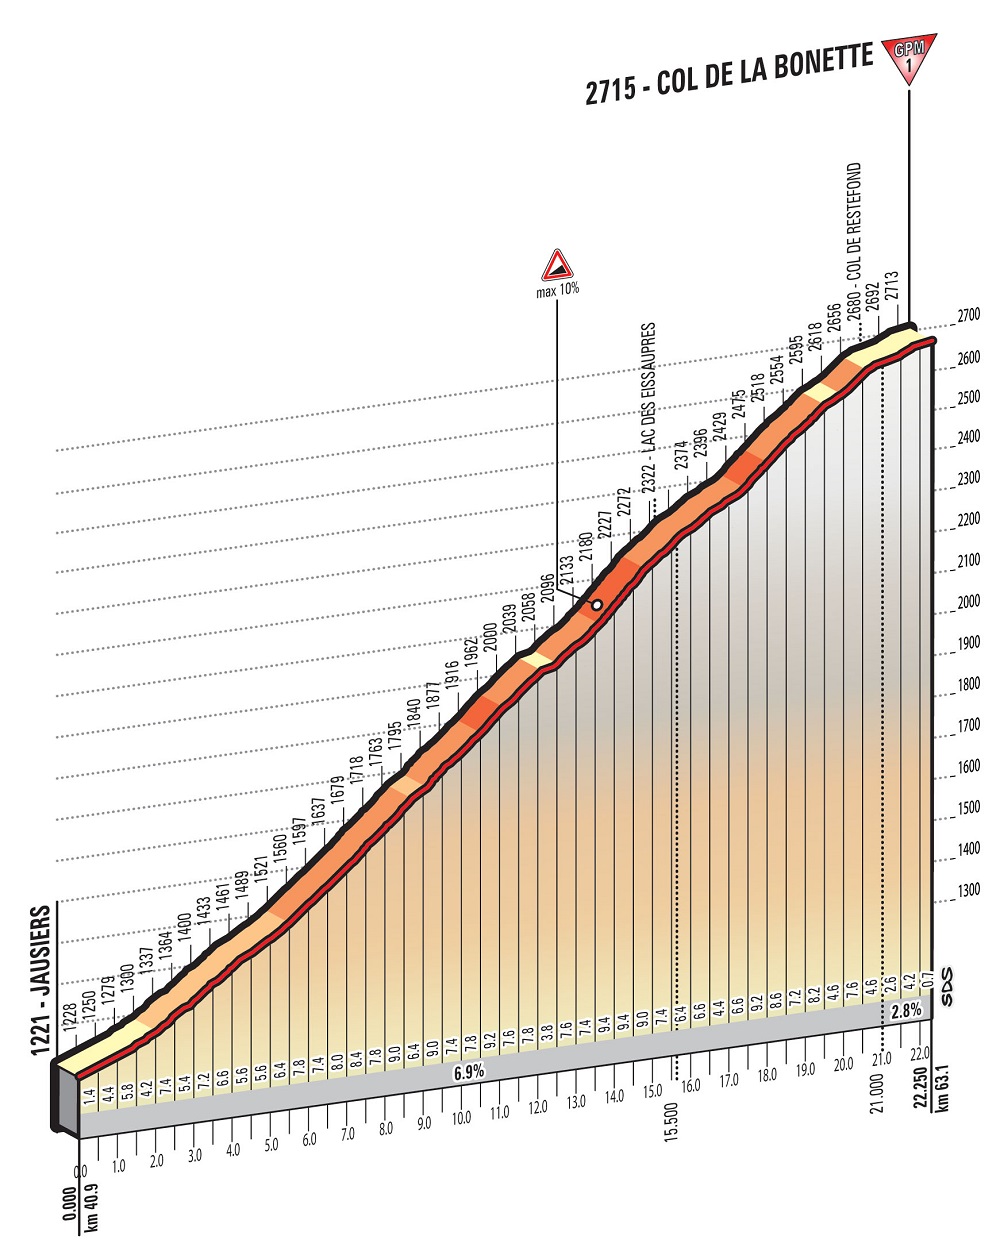 Höhenprofil Giro dItalia 2016